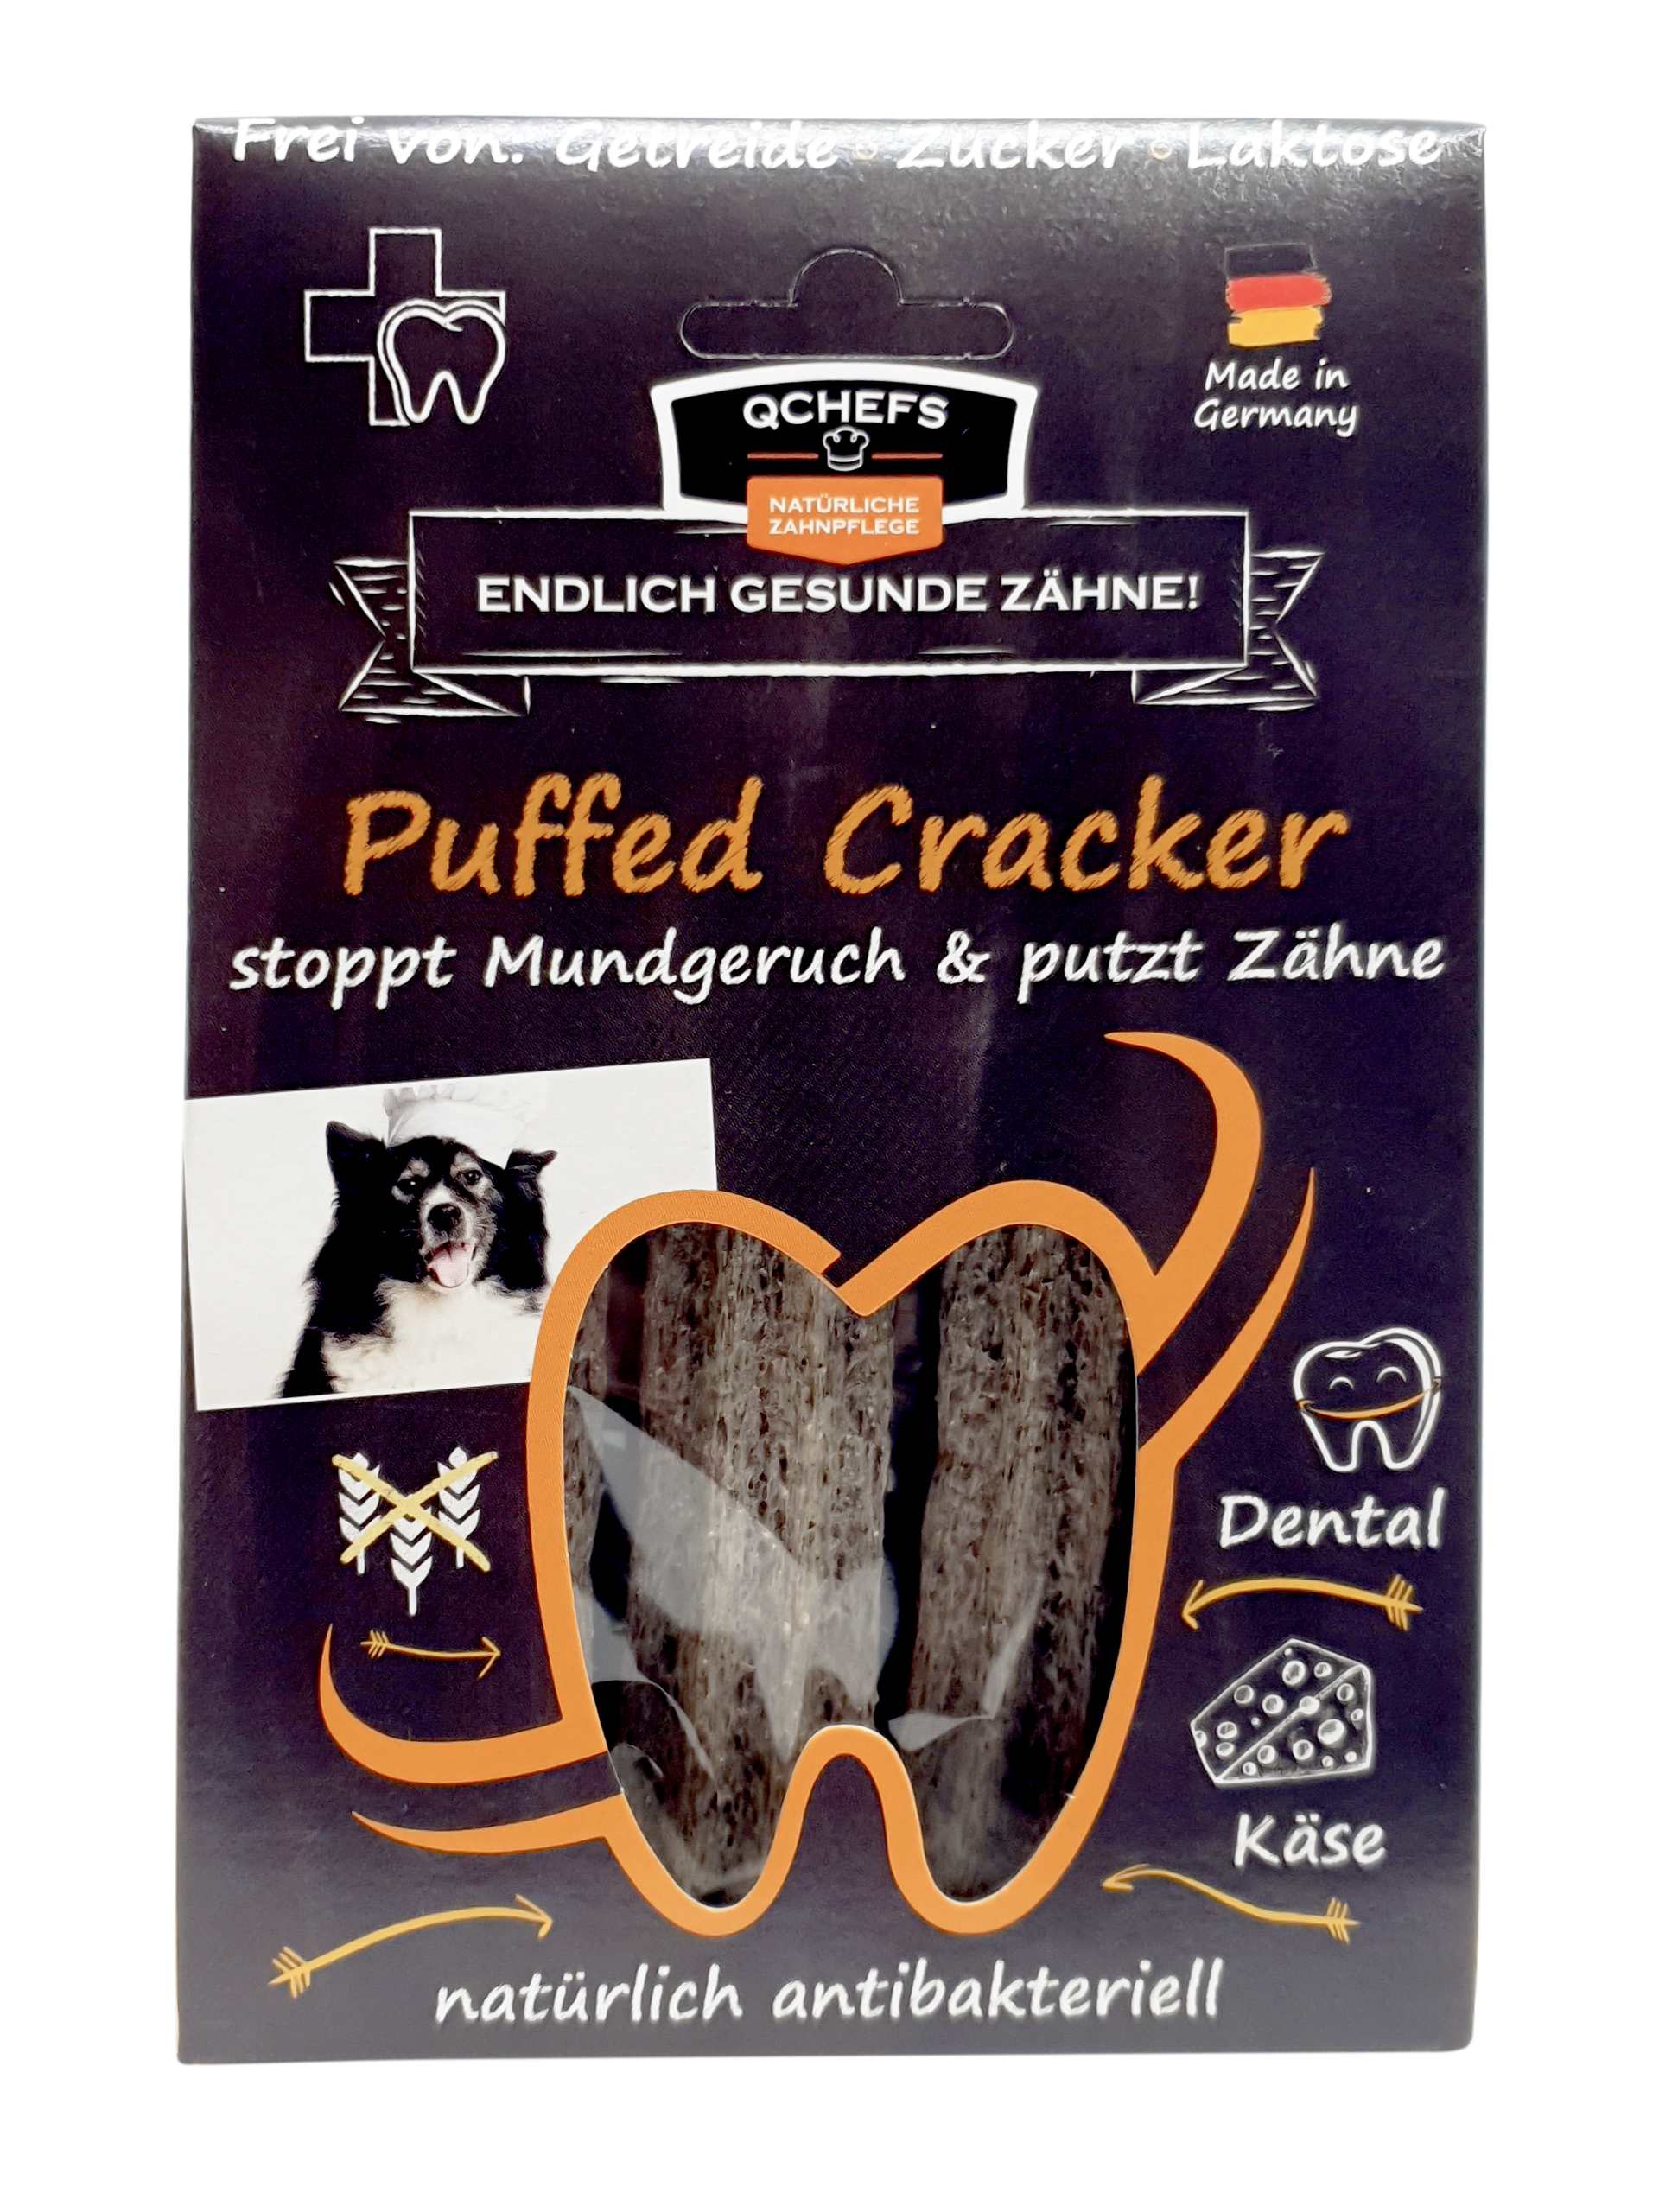 QChefs - Puffed Cracker